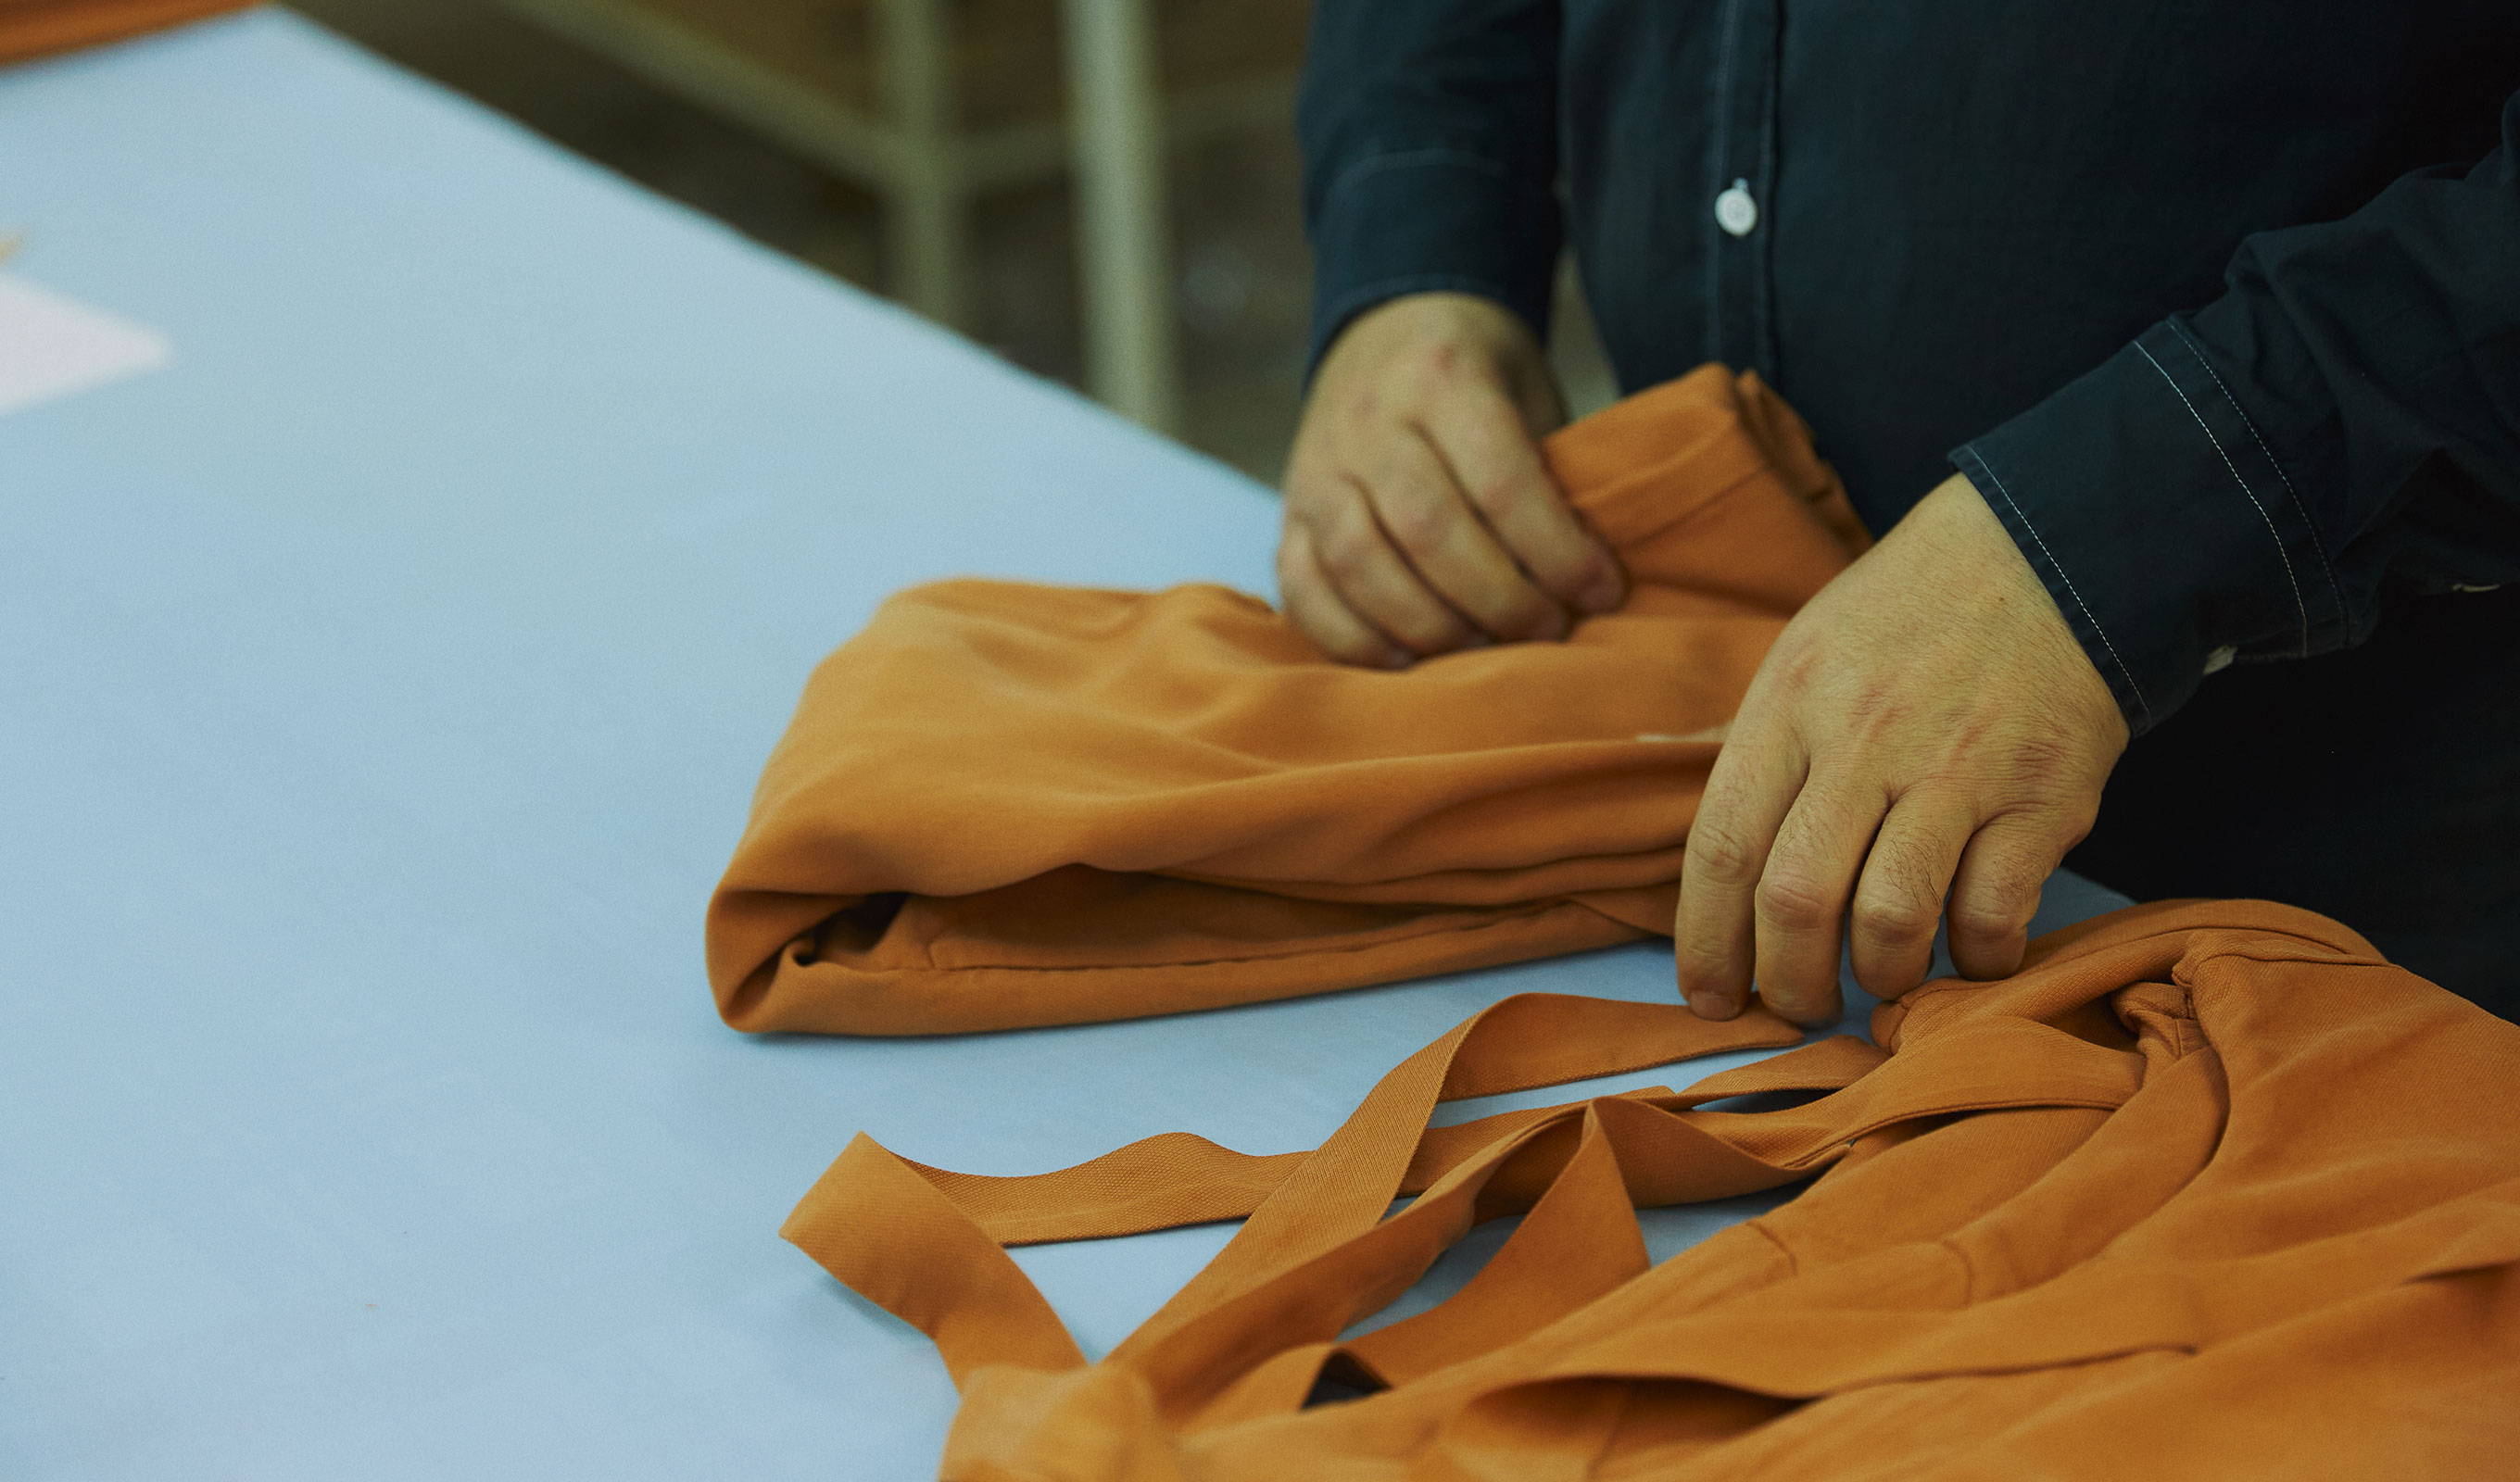 Prüfung und Qualitätskontrolle in der Textilindustrie